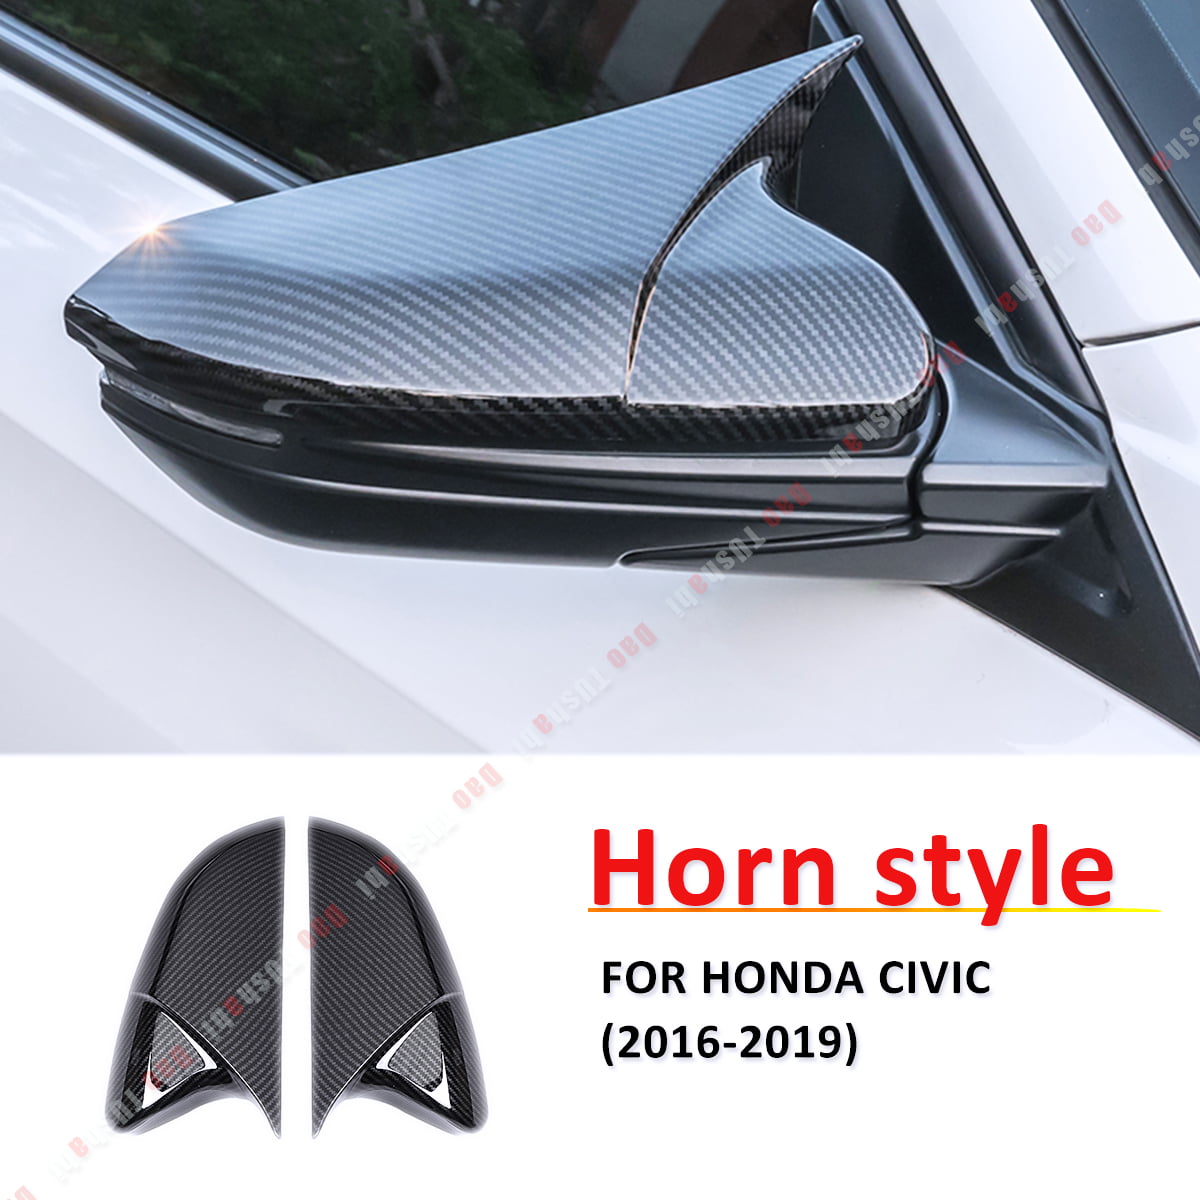 Glossy Chrome Car Side Mirror Cover For Honda Civic W/O Camera Protector Trims